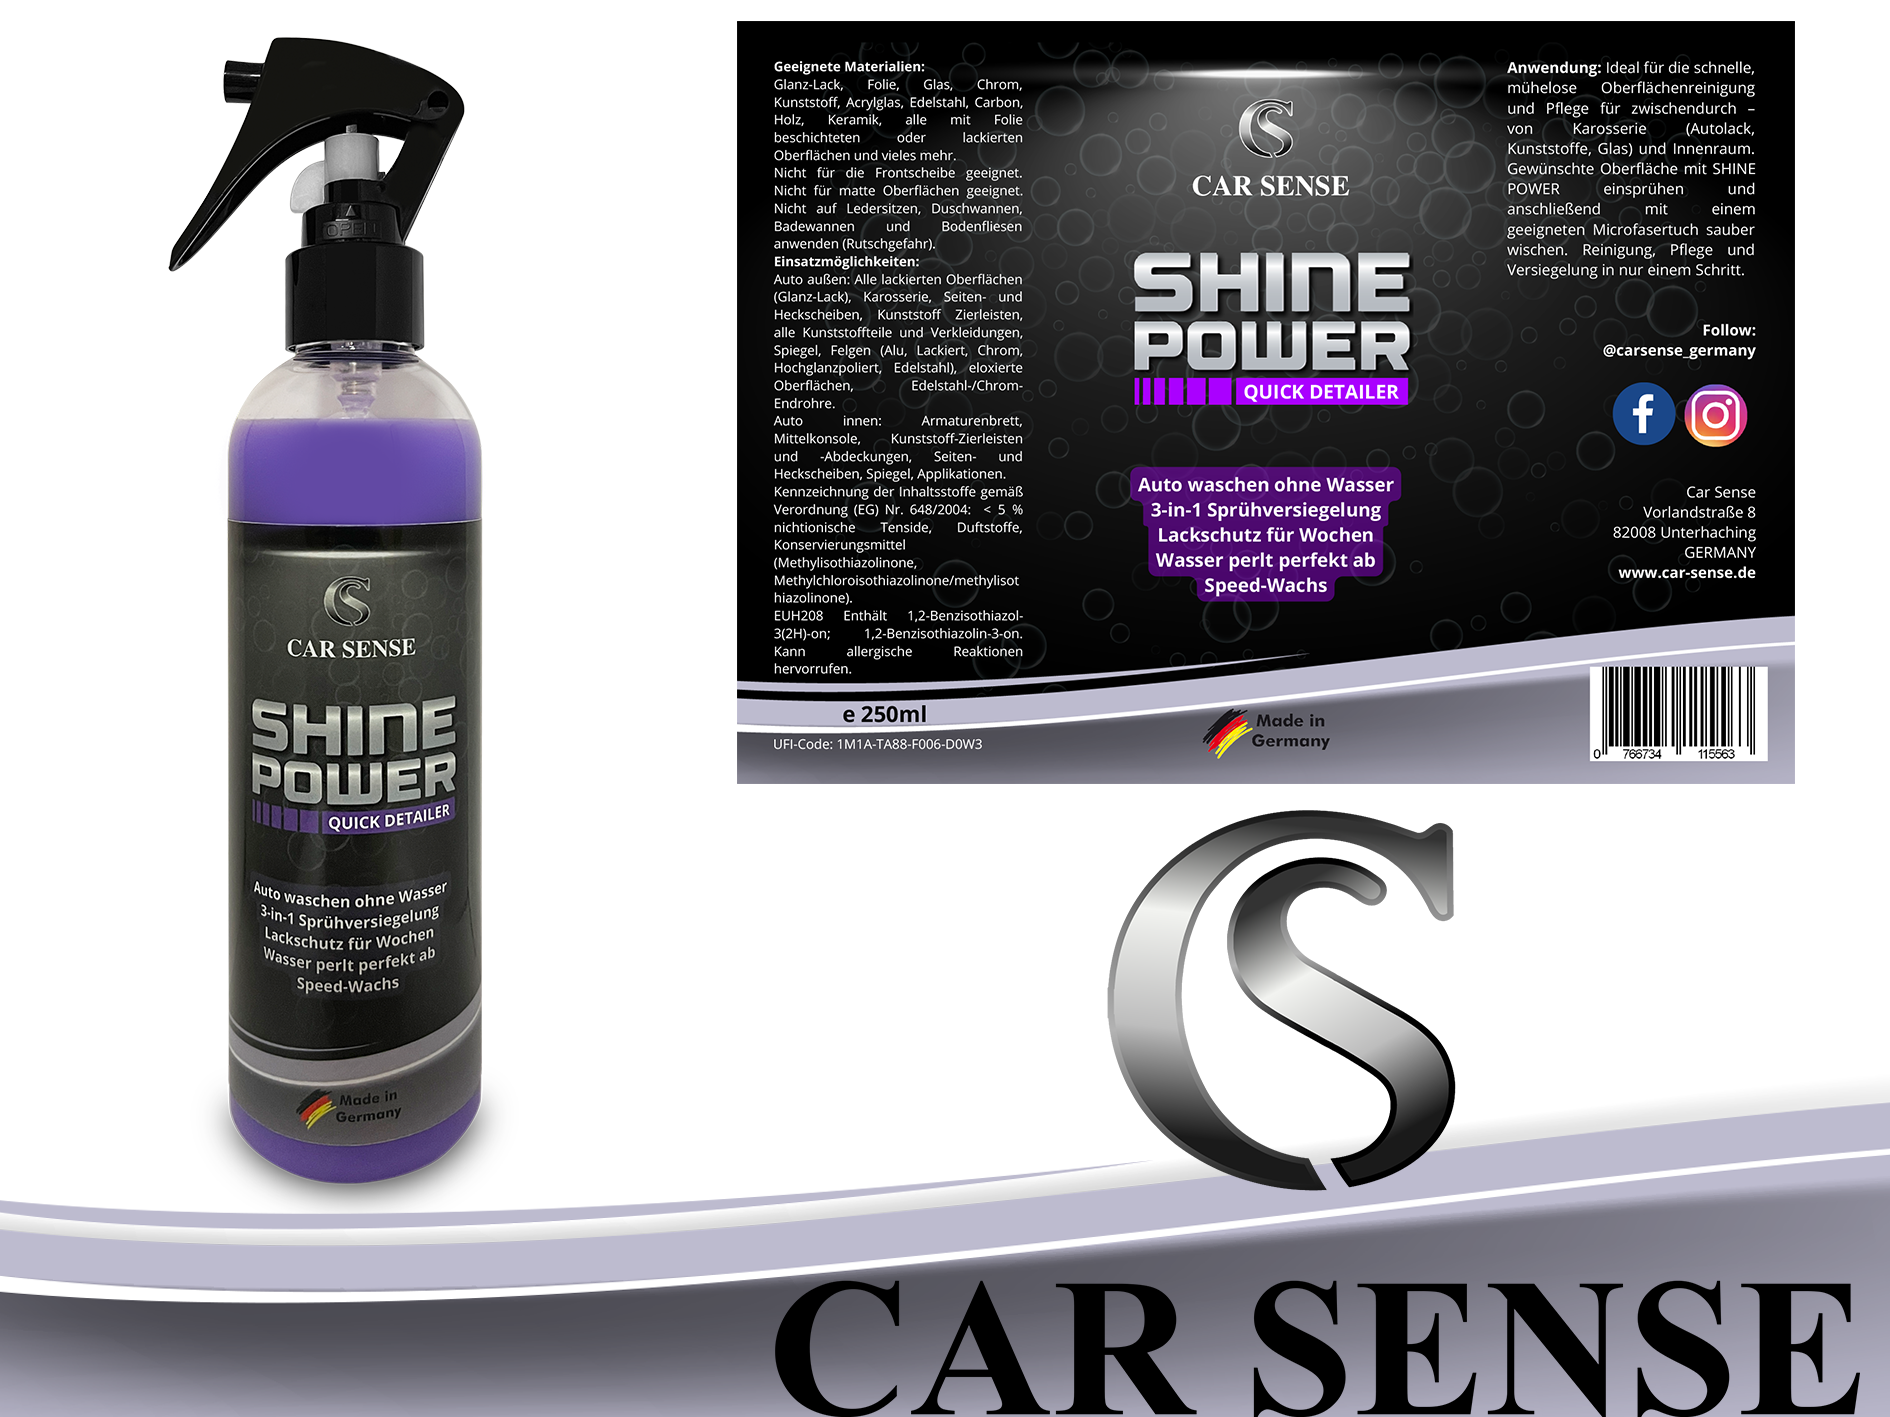 Car Sense Shine Power Quick Detailer Speed-Wachs 0,25L 3 in 1 Autolack-Reiniger